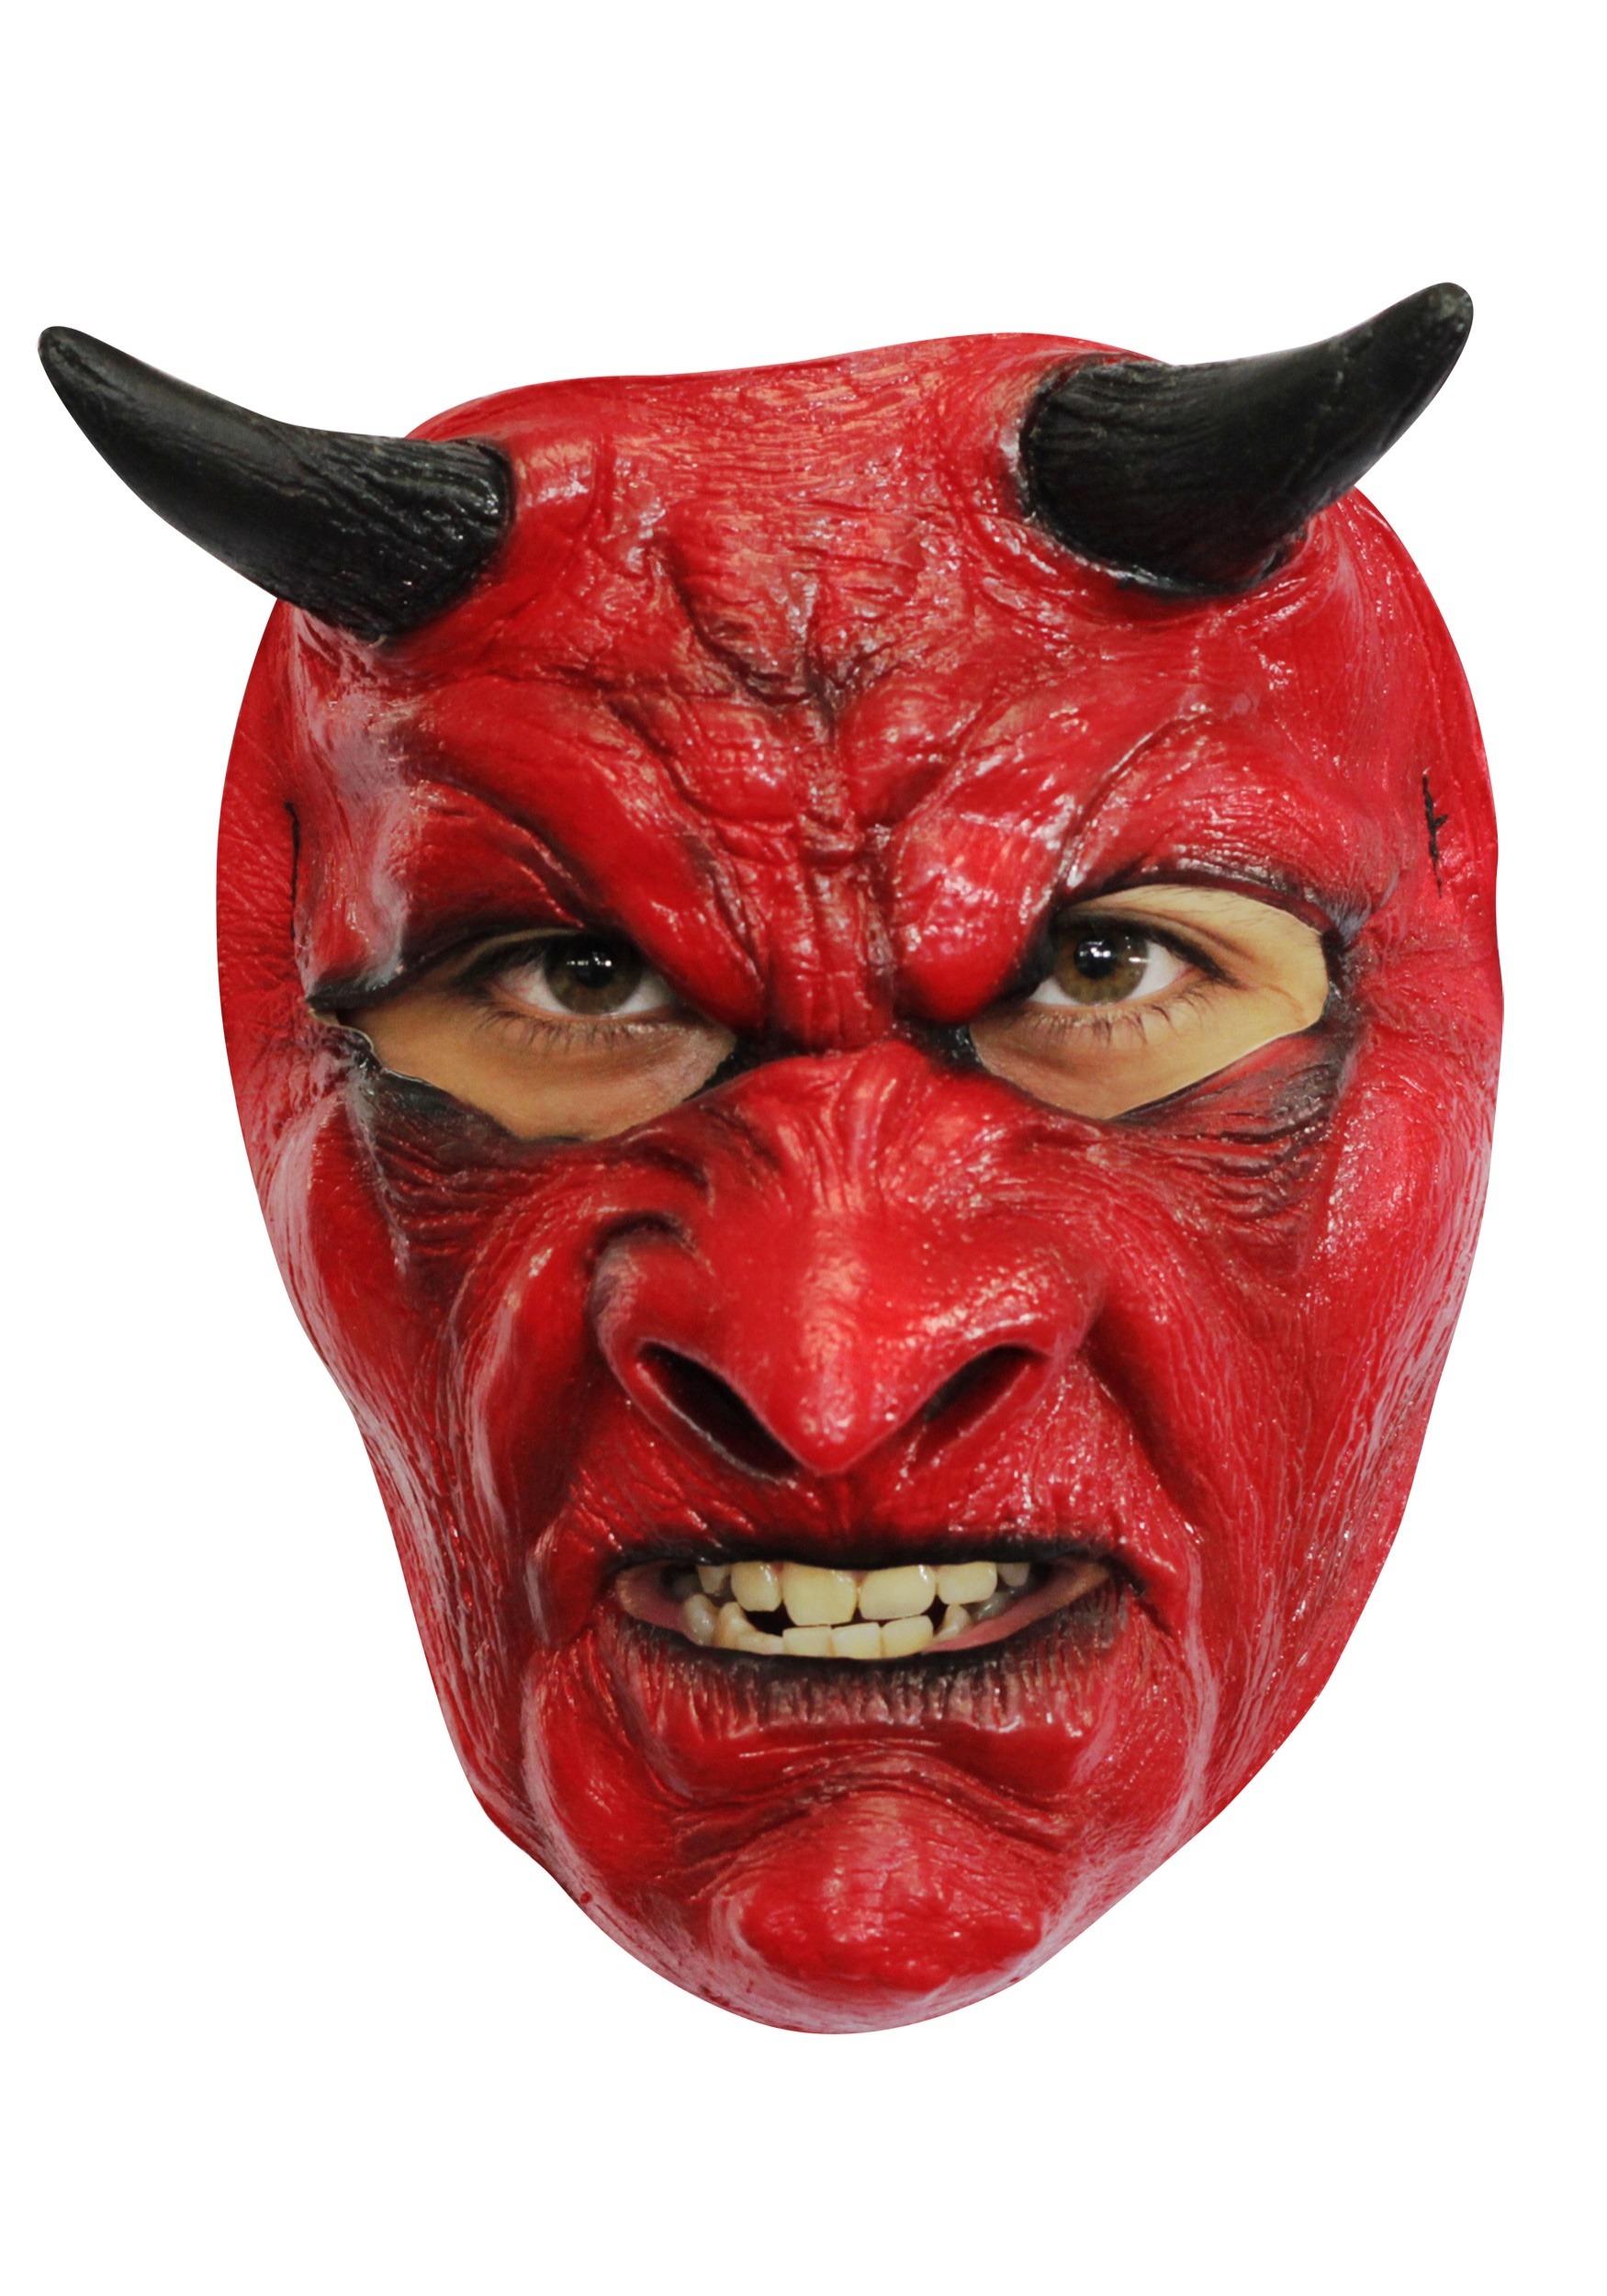 evil devil